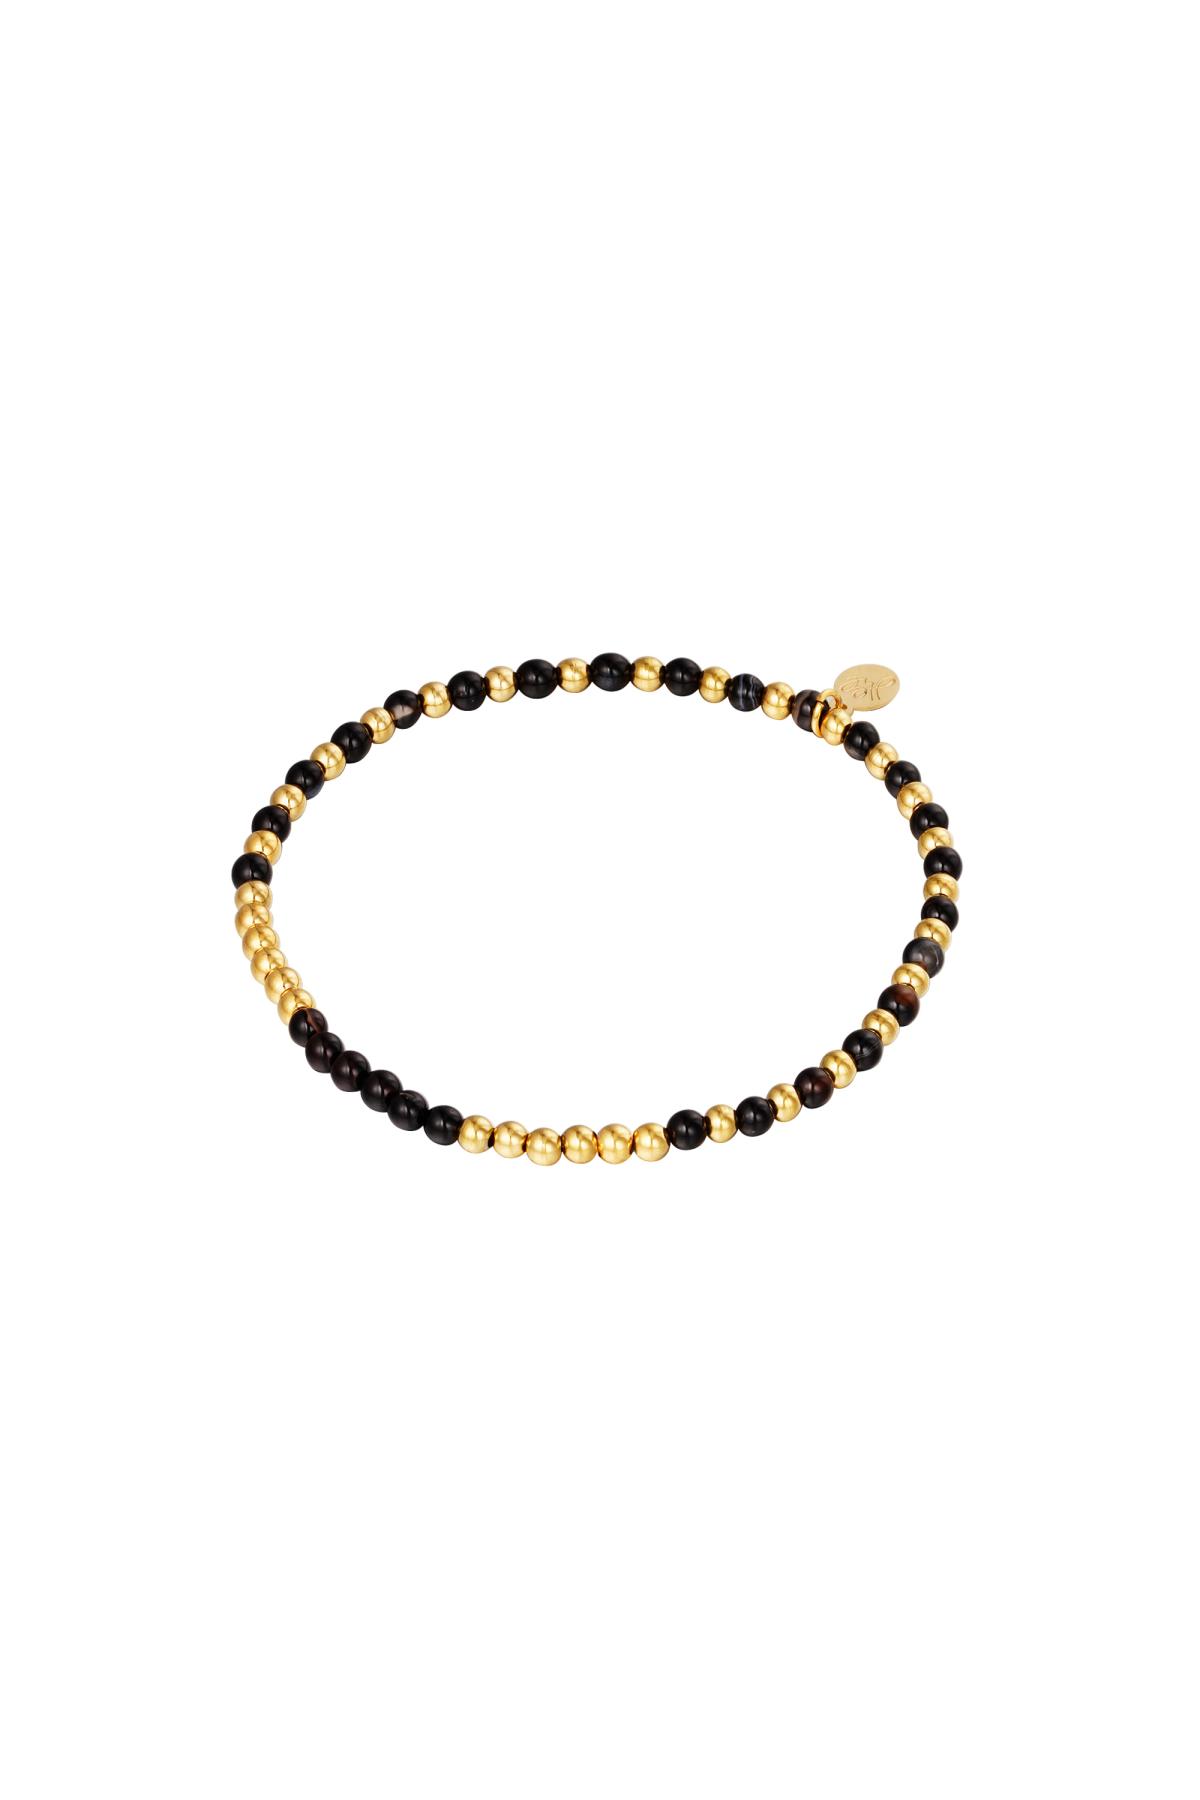 Bracelet Beads Spheres Gold Stainless Steel